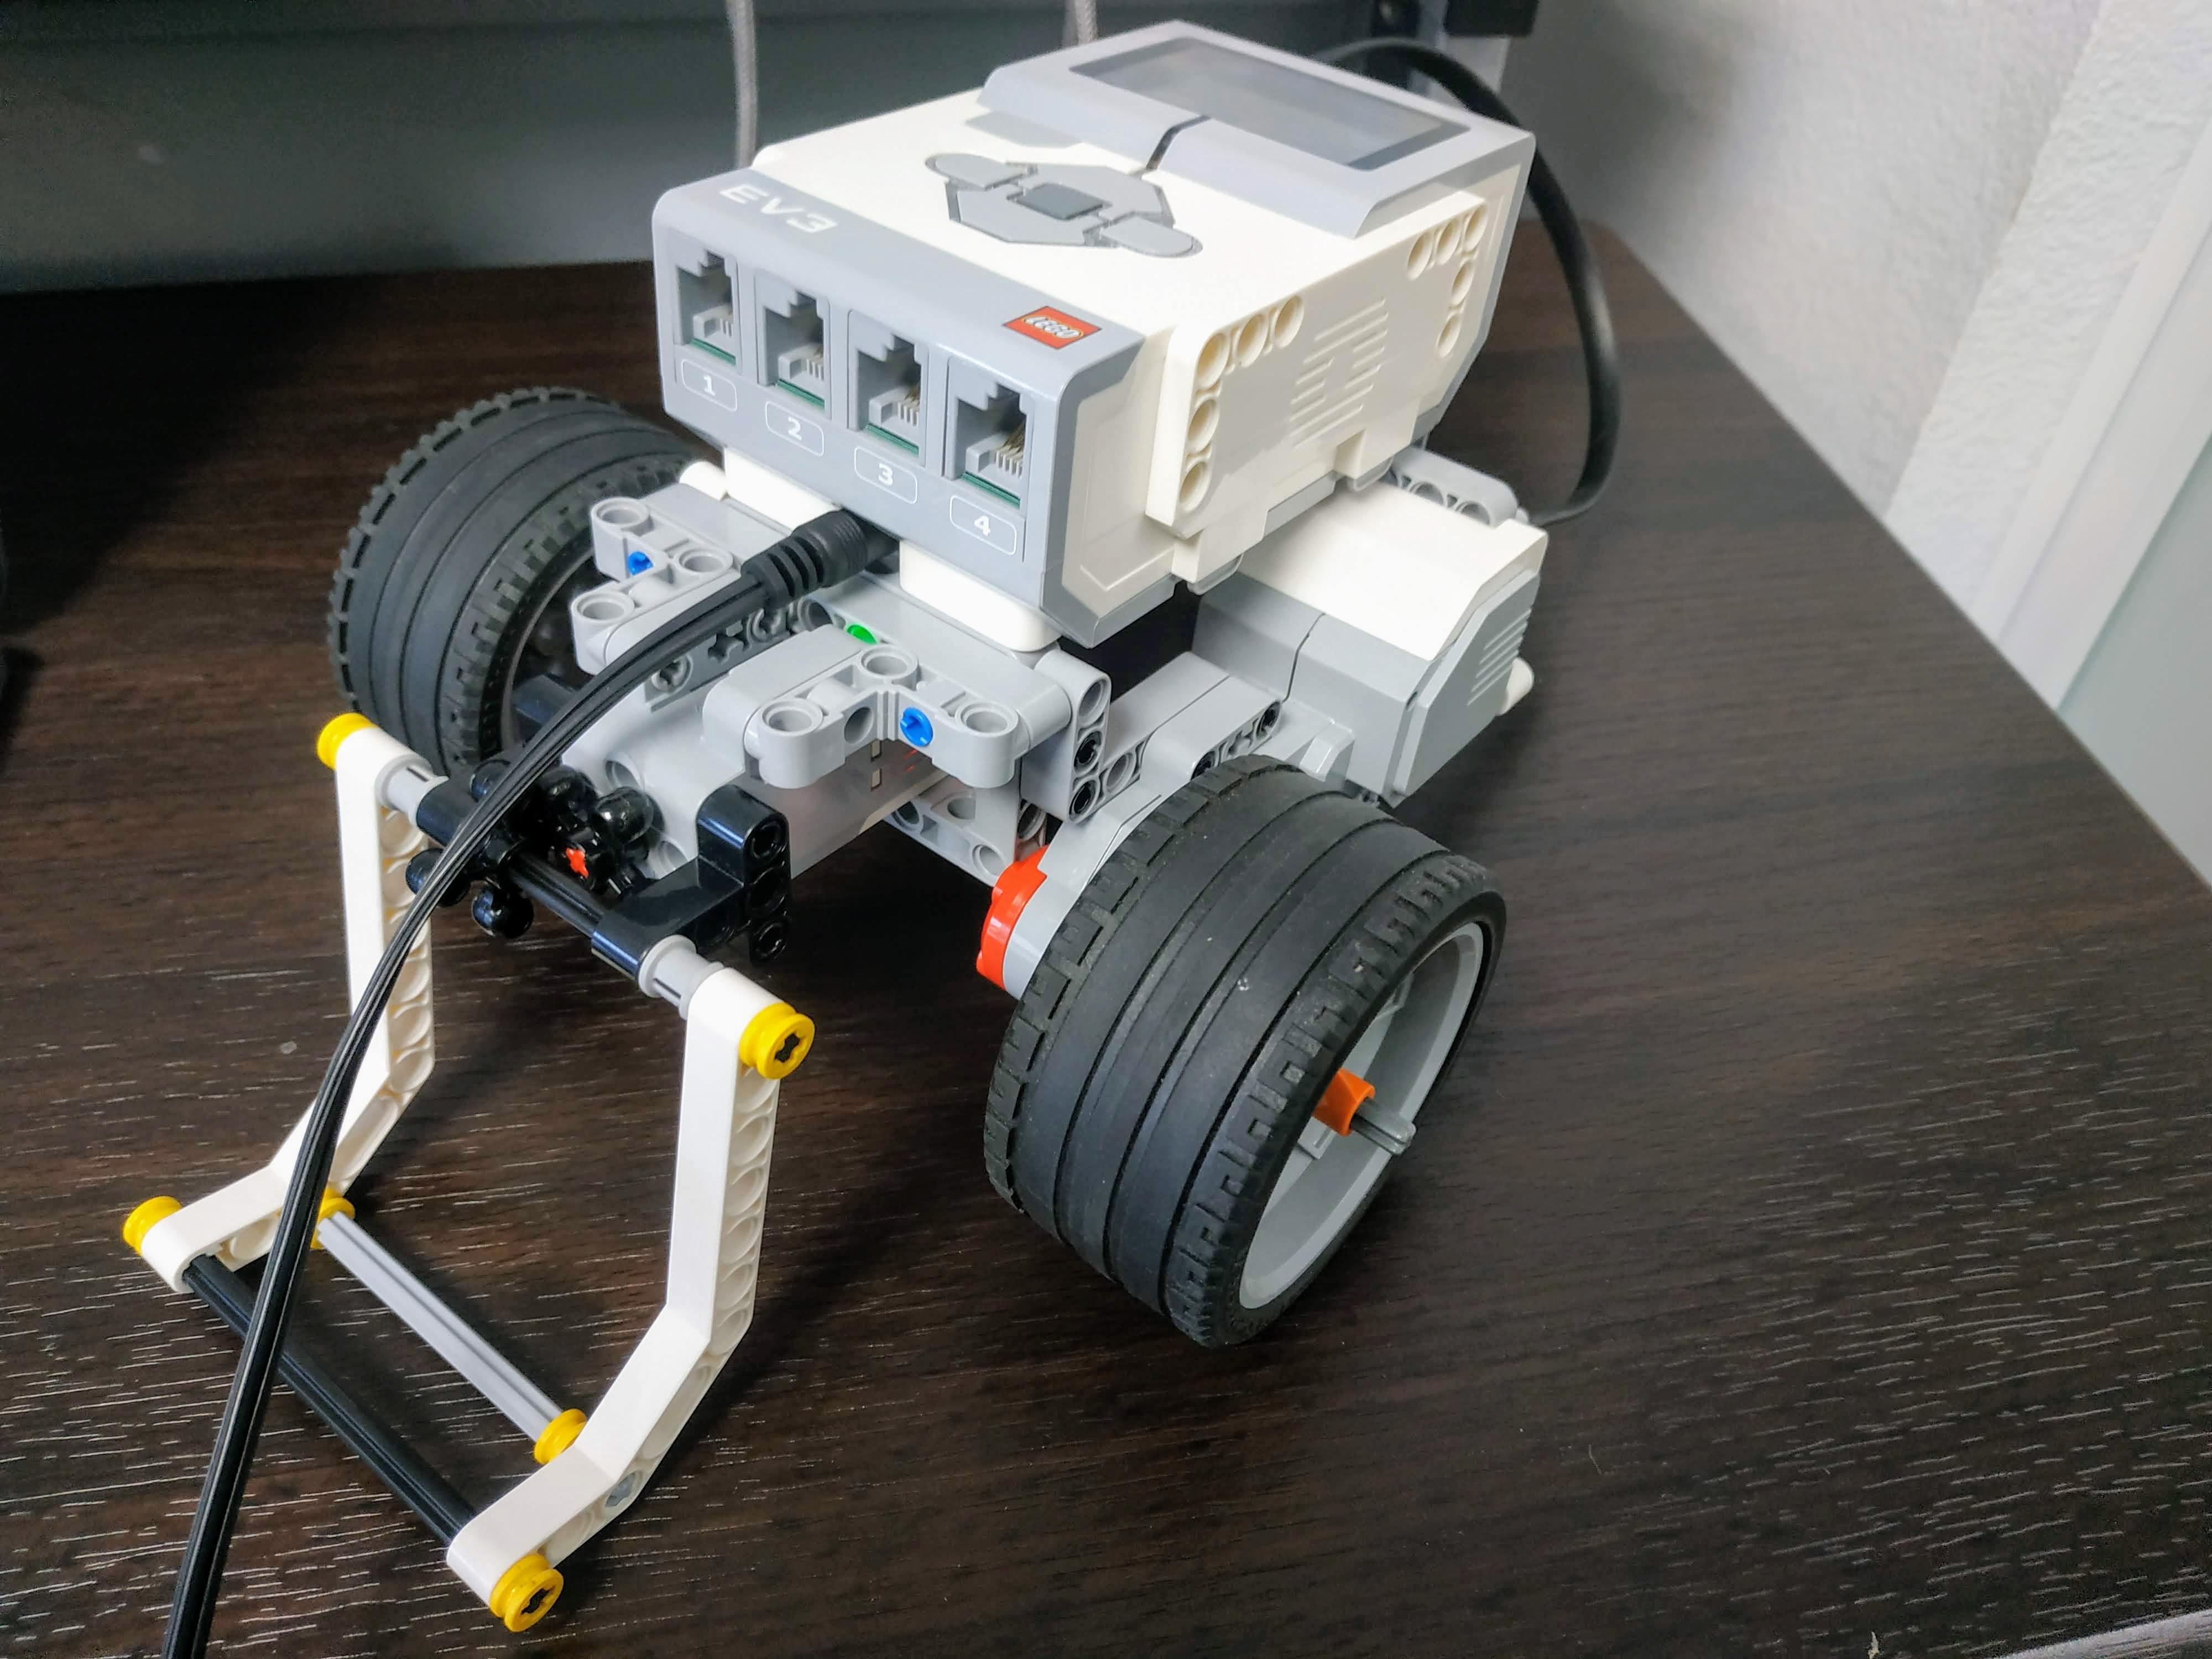 ik ben trots Belofte specificeren File:Lego Mindstorms EV3 Robot.jpg - Wikimedia Commons